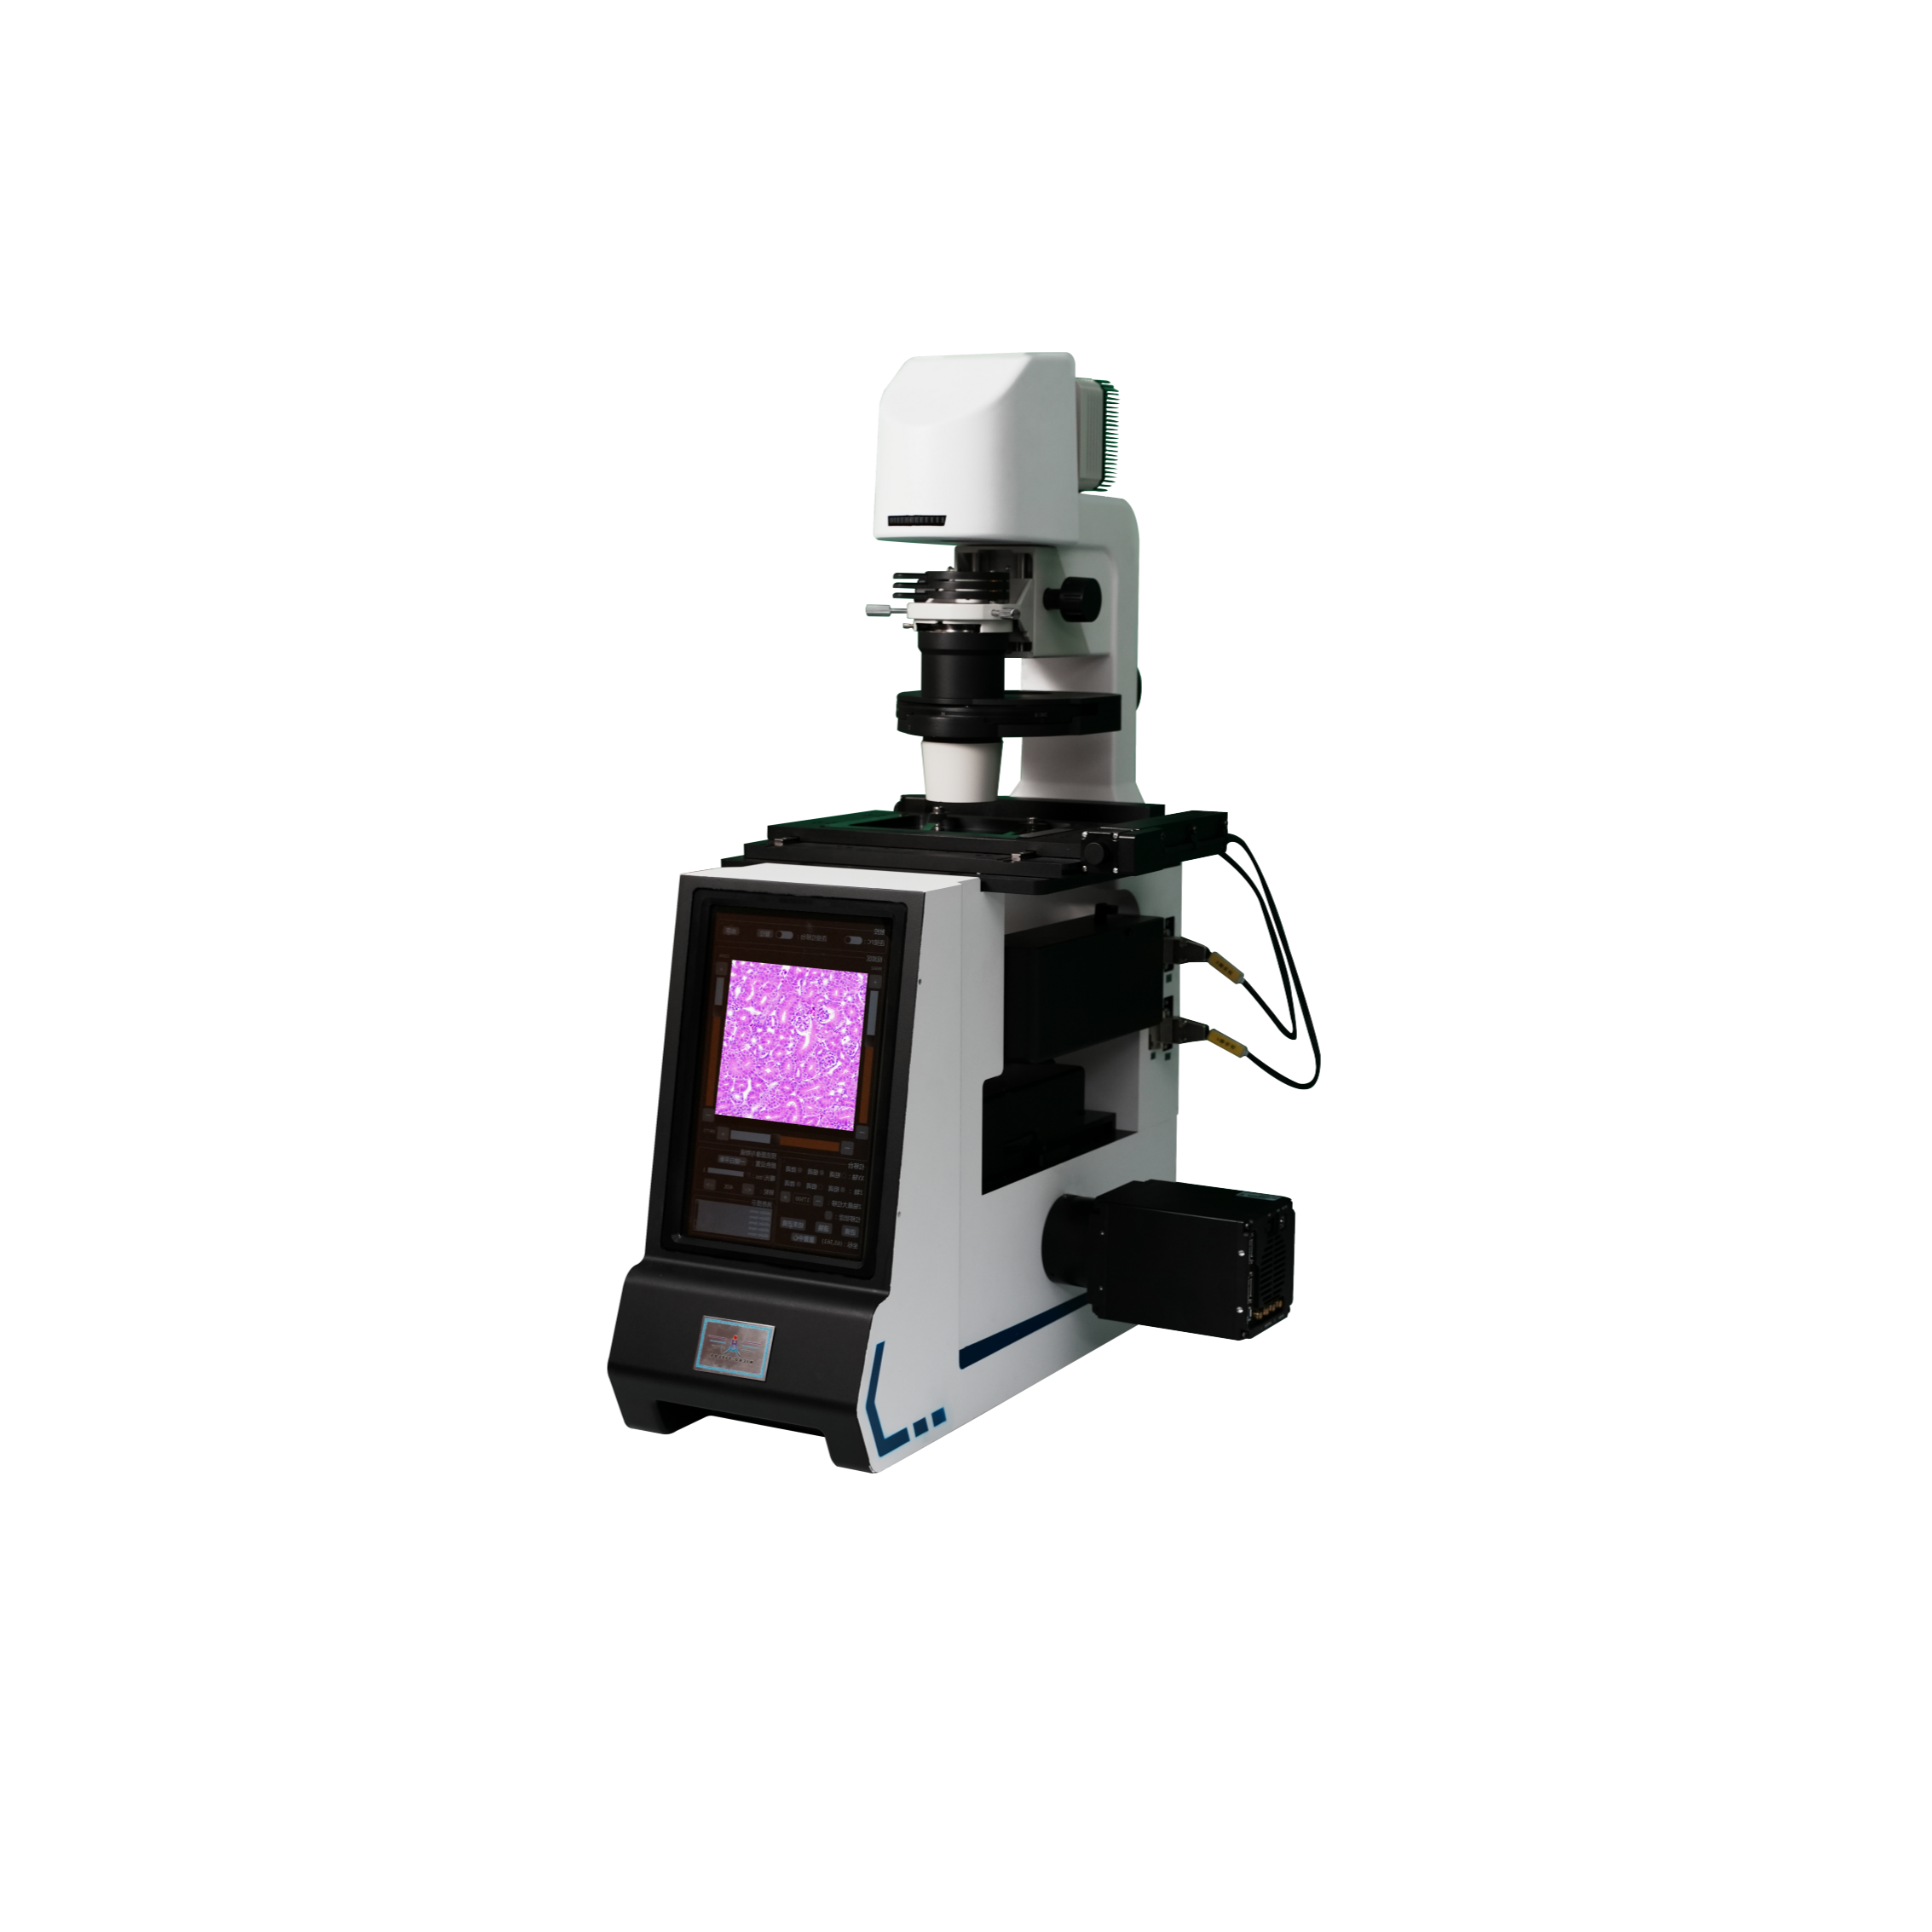 全电动倒置超分辨显微镜平台HM-Fluo-01